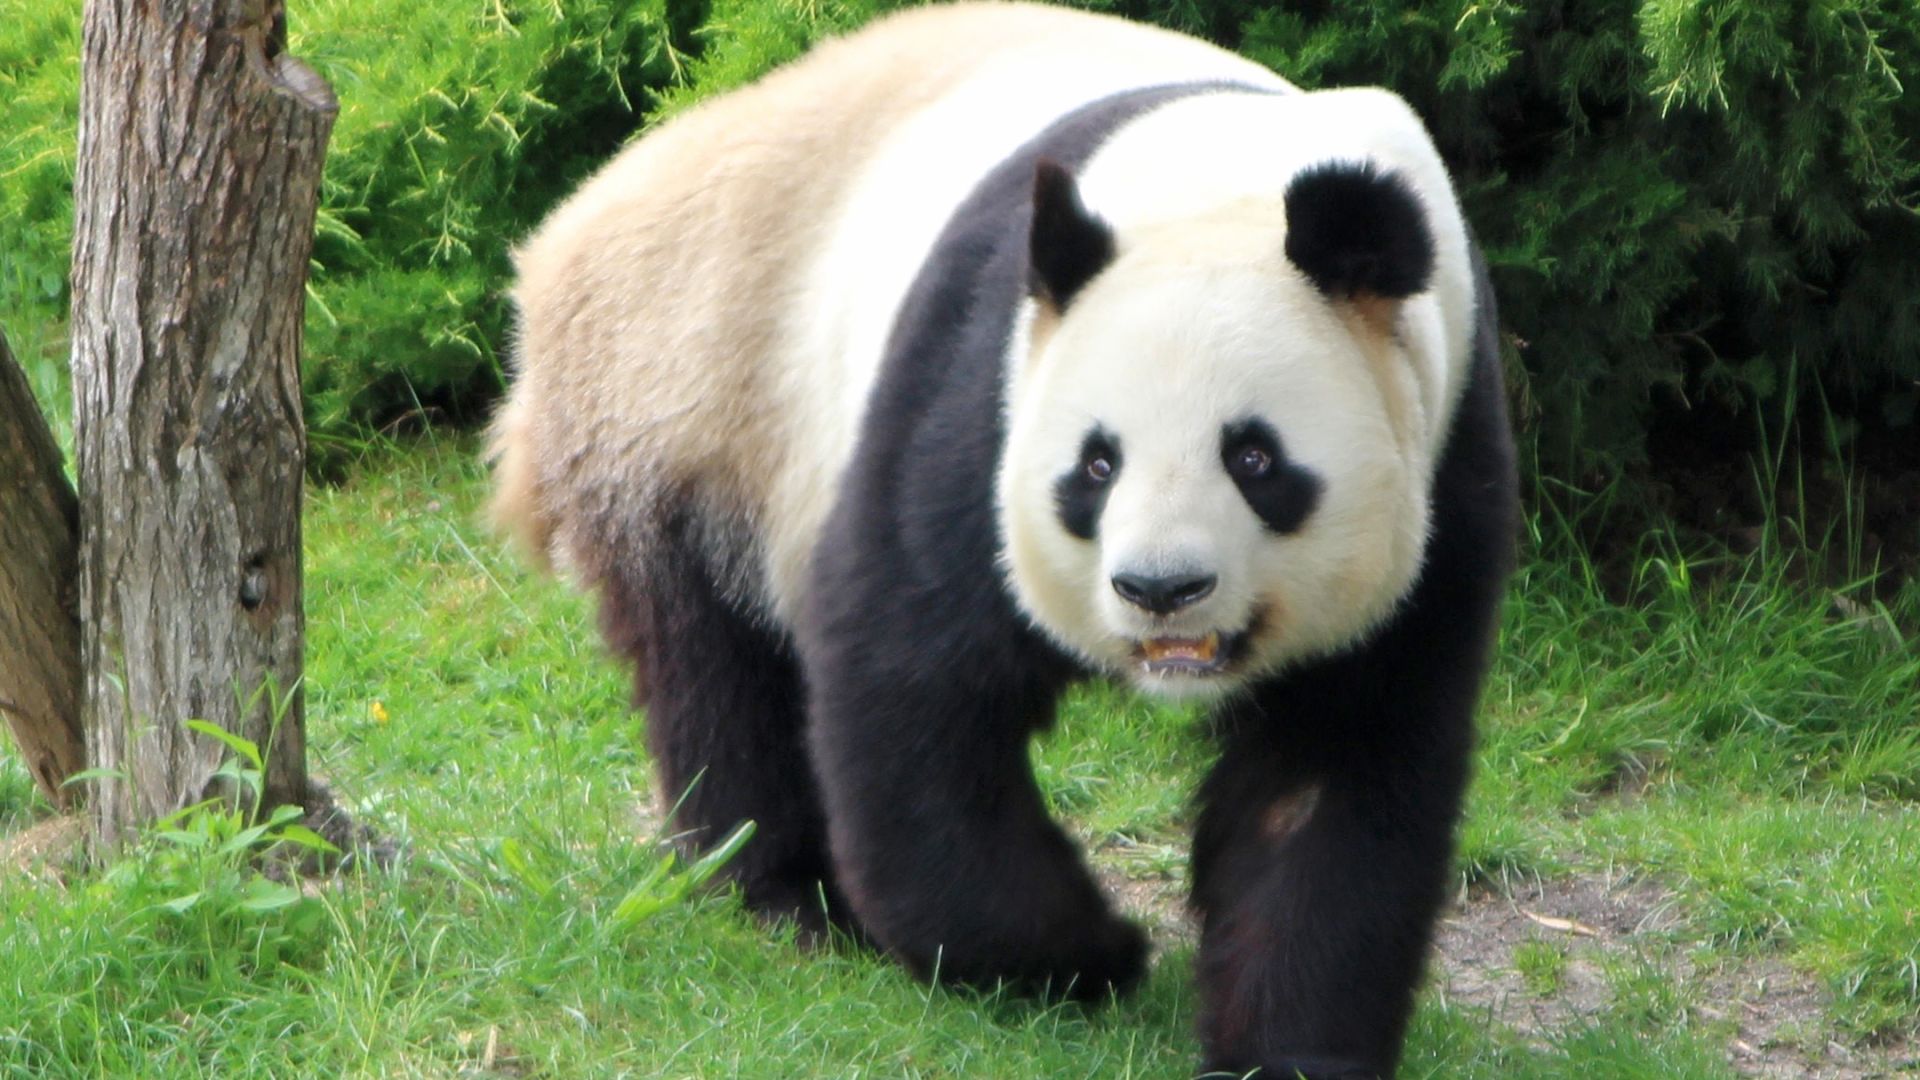 Panda geant : taille, description, biotope, habitat, reproduction